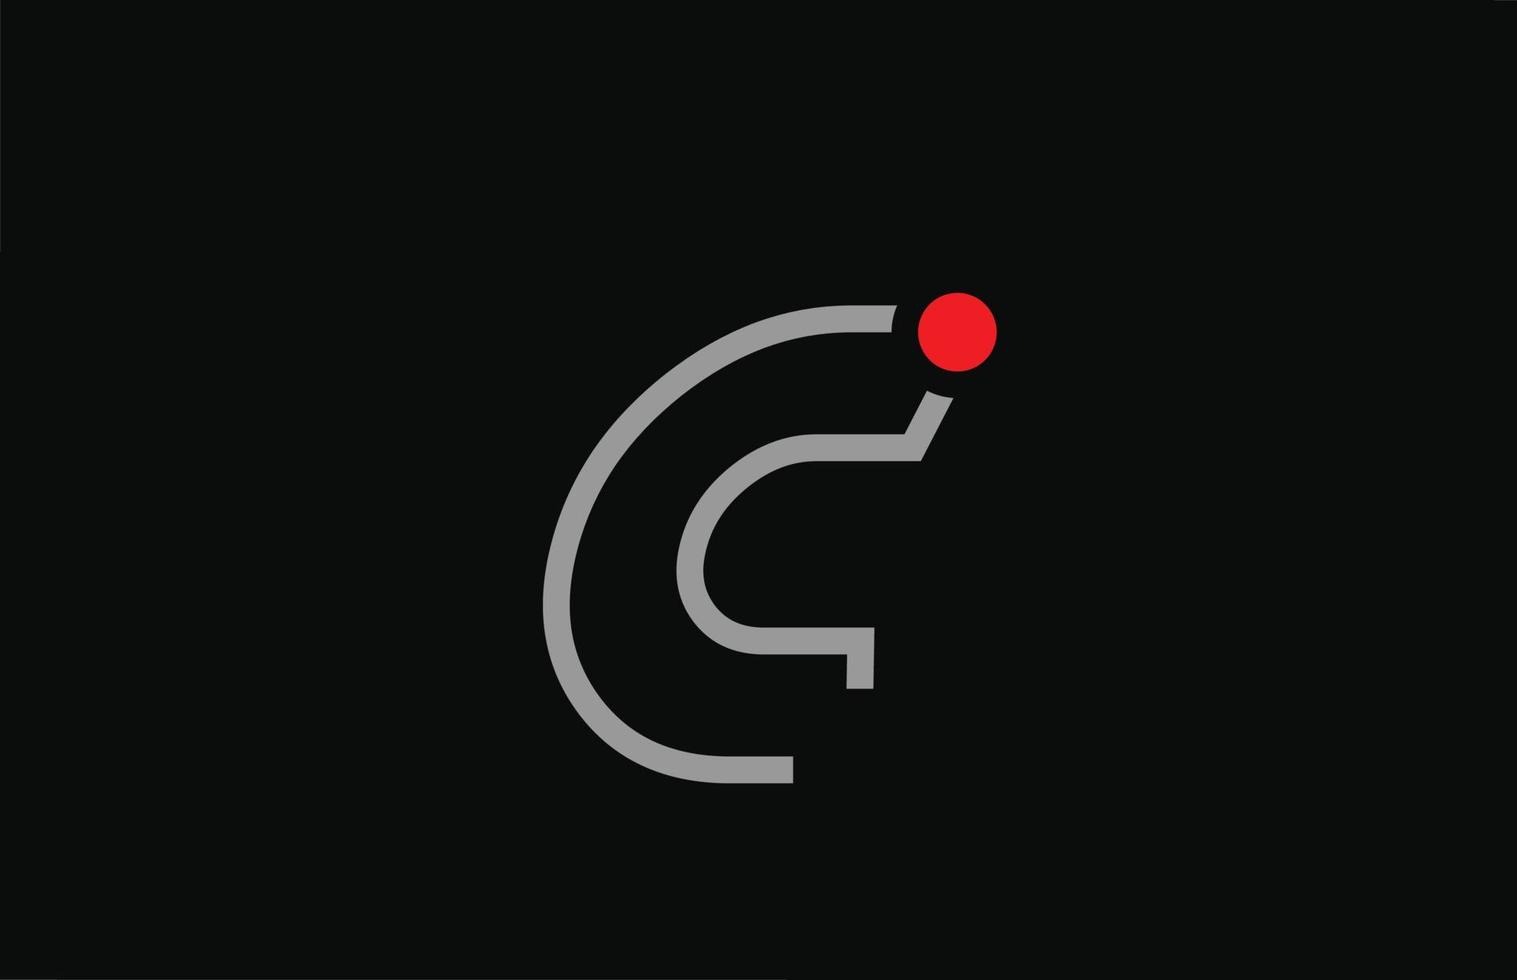 c Schwarz-Weiß-Alphabet-Buchstaben-Logo-Icon-Design mit rotem Punkt. kreative Vorlage für Unternehmen und Unternehmen vektor